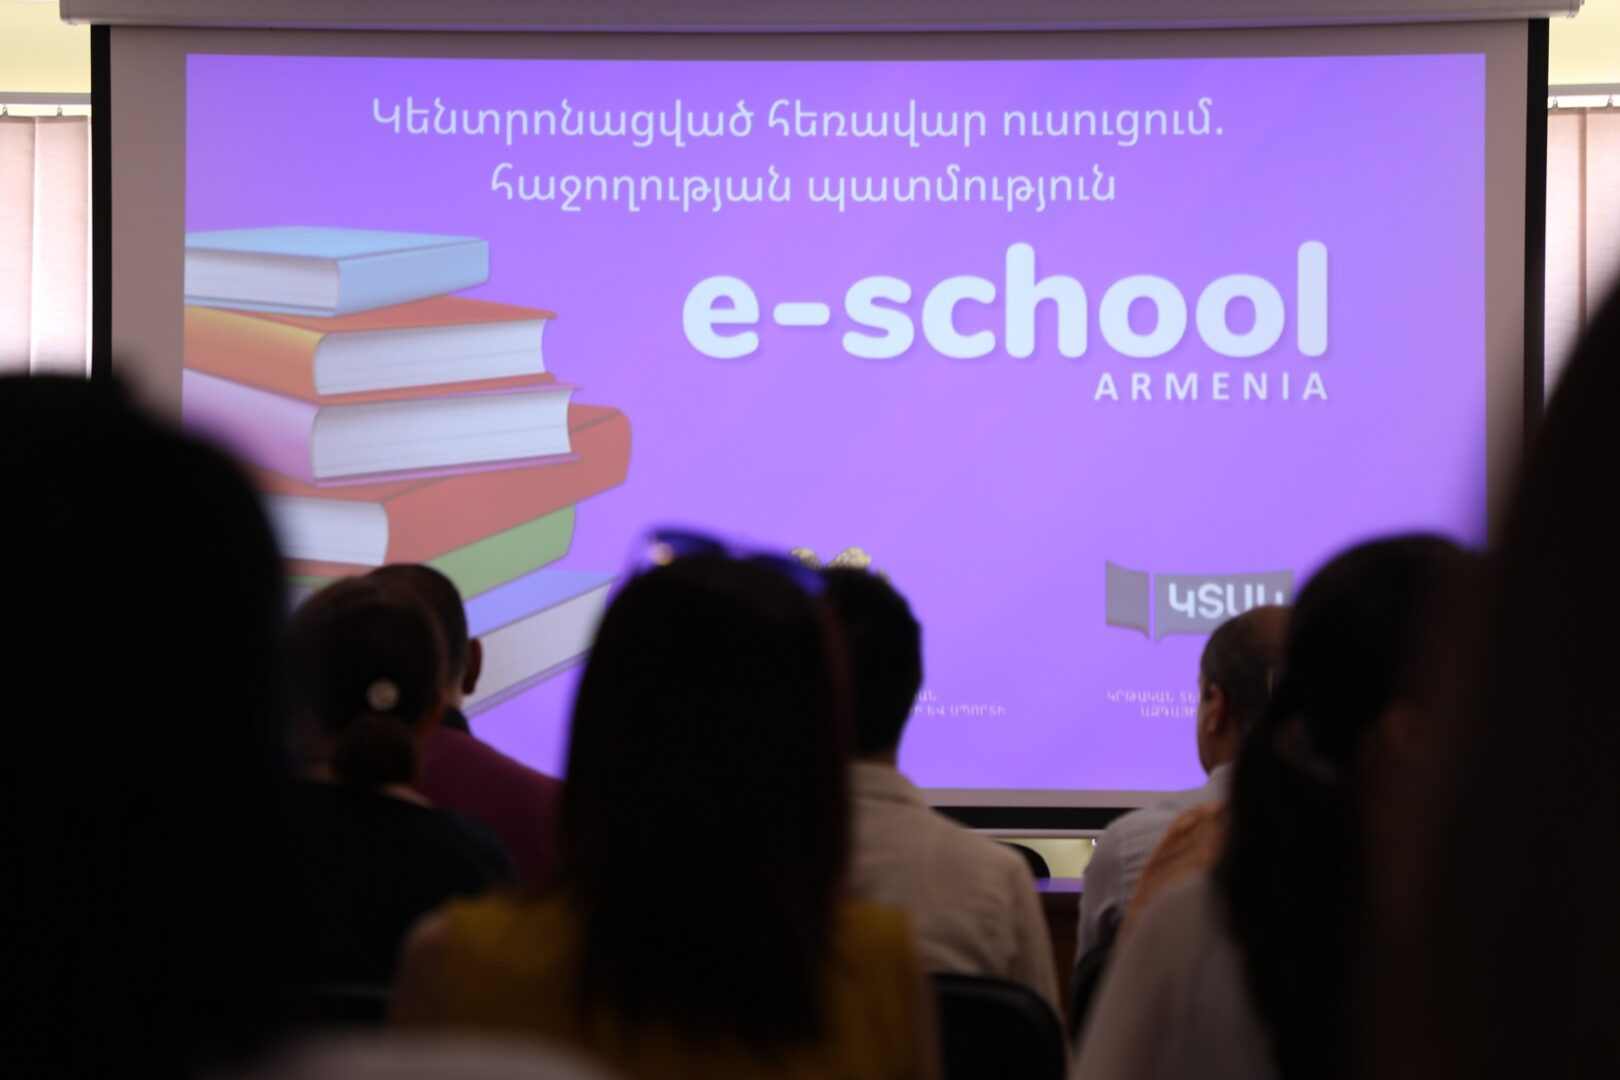 Ամփոփվել է «E-school Armenia» նախագիծը.  ապահովվել է ավելի քան 5500 աշակերտների կրթության շարունակականությունը